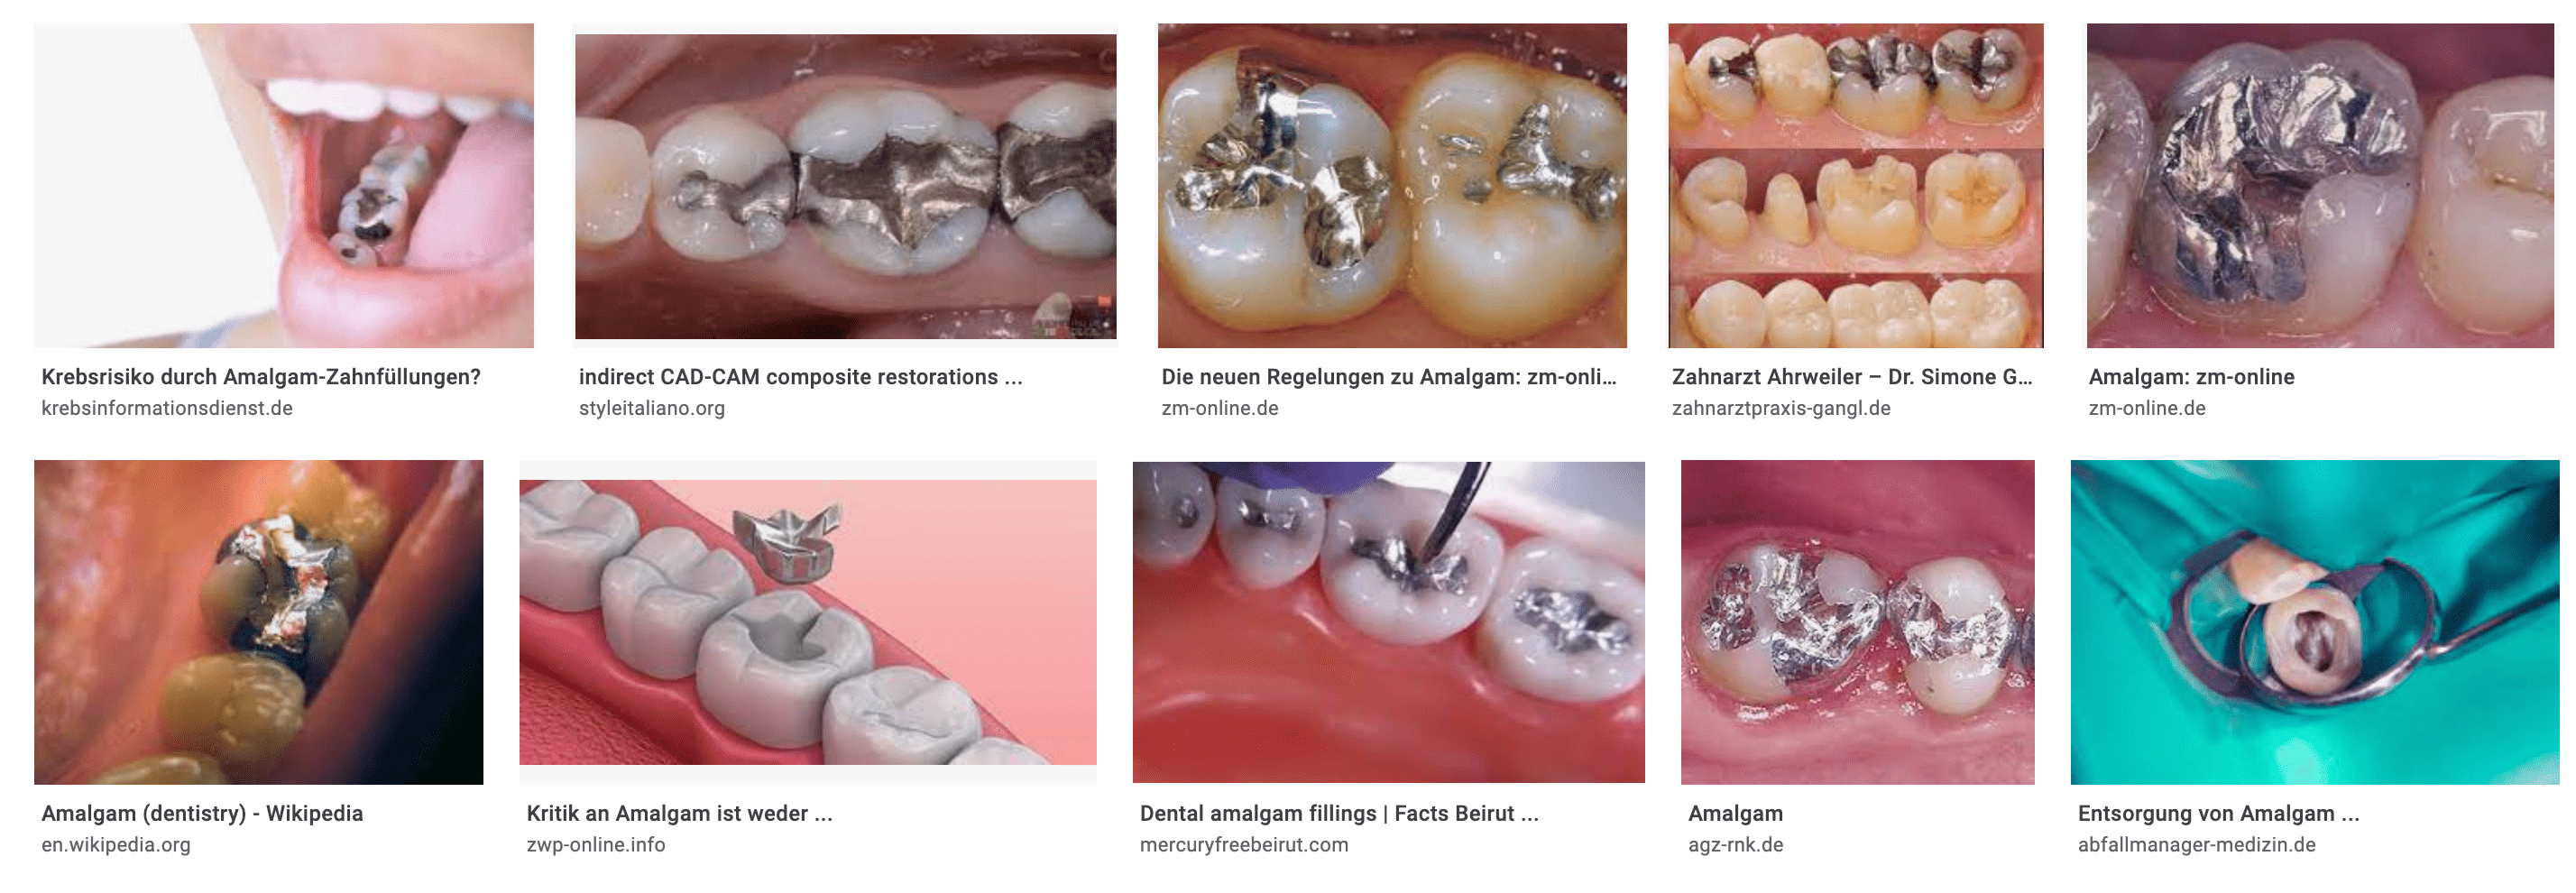 Amalgam (dentistry) - Wikipedia